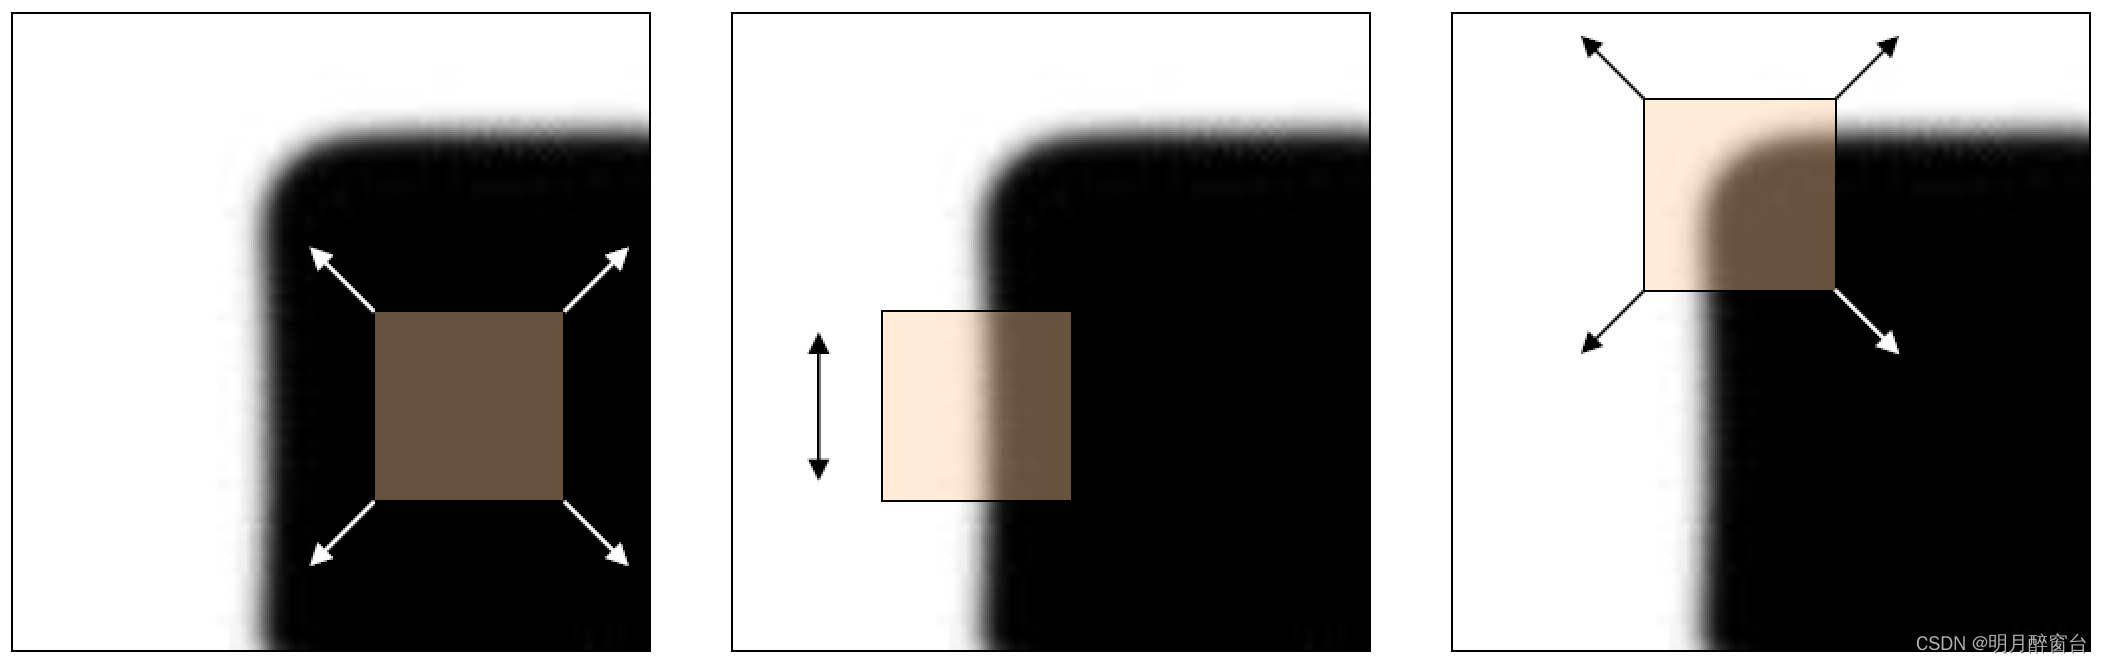  a)  flat region              b)  edge                     c)  corner 